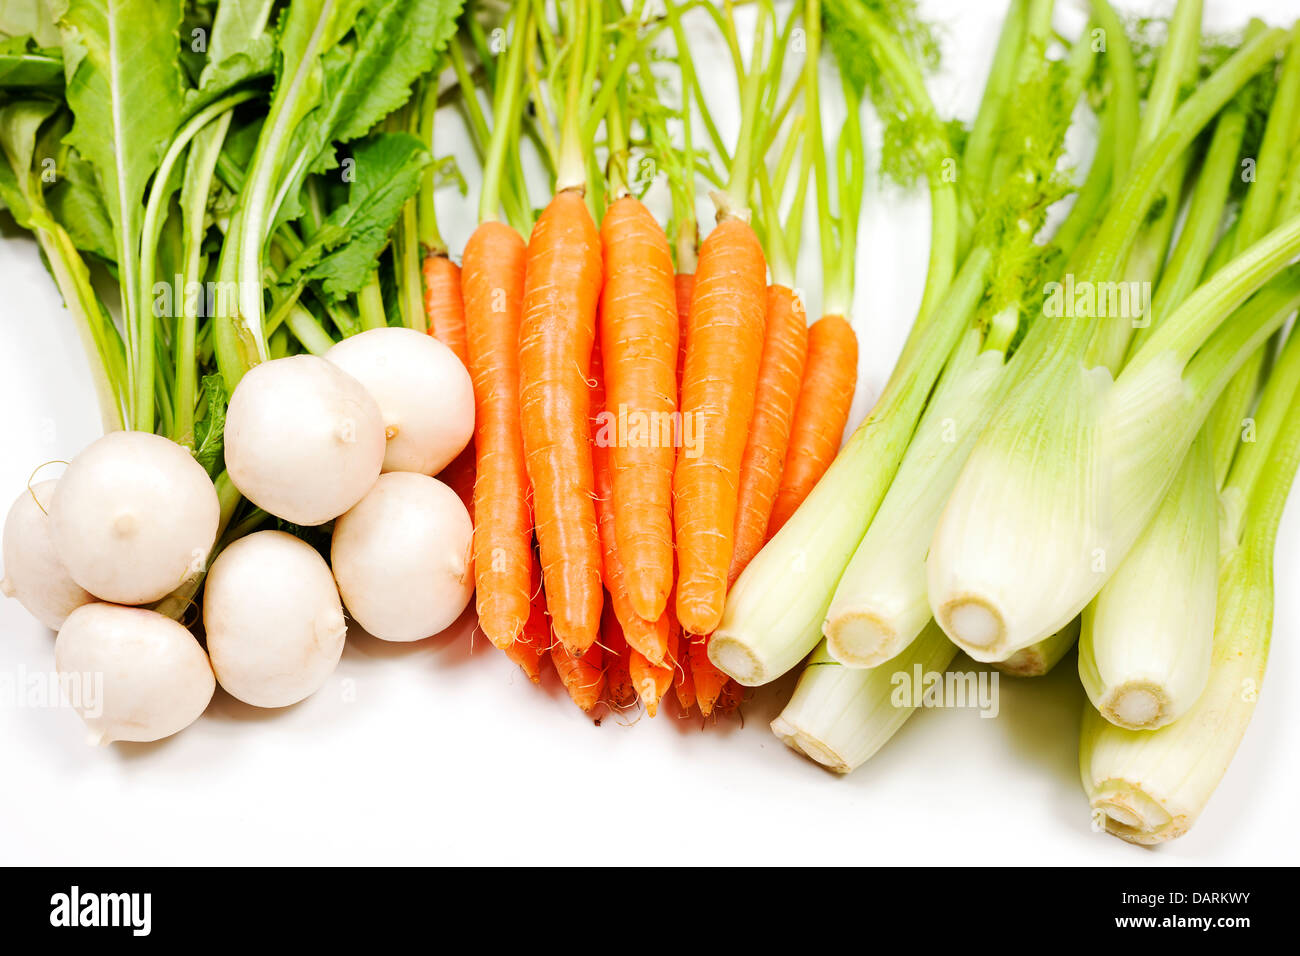 Le navet, la carotte et le céleri de jardin sur fond blanc Banque D'Images